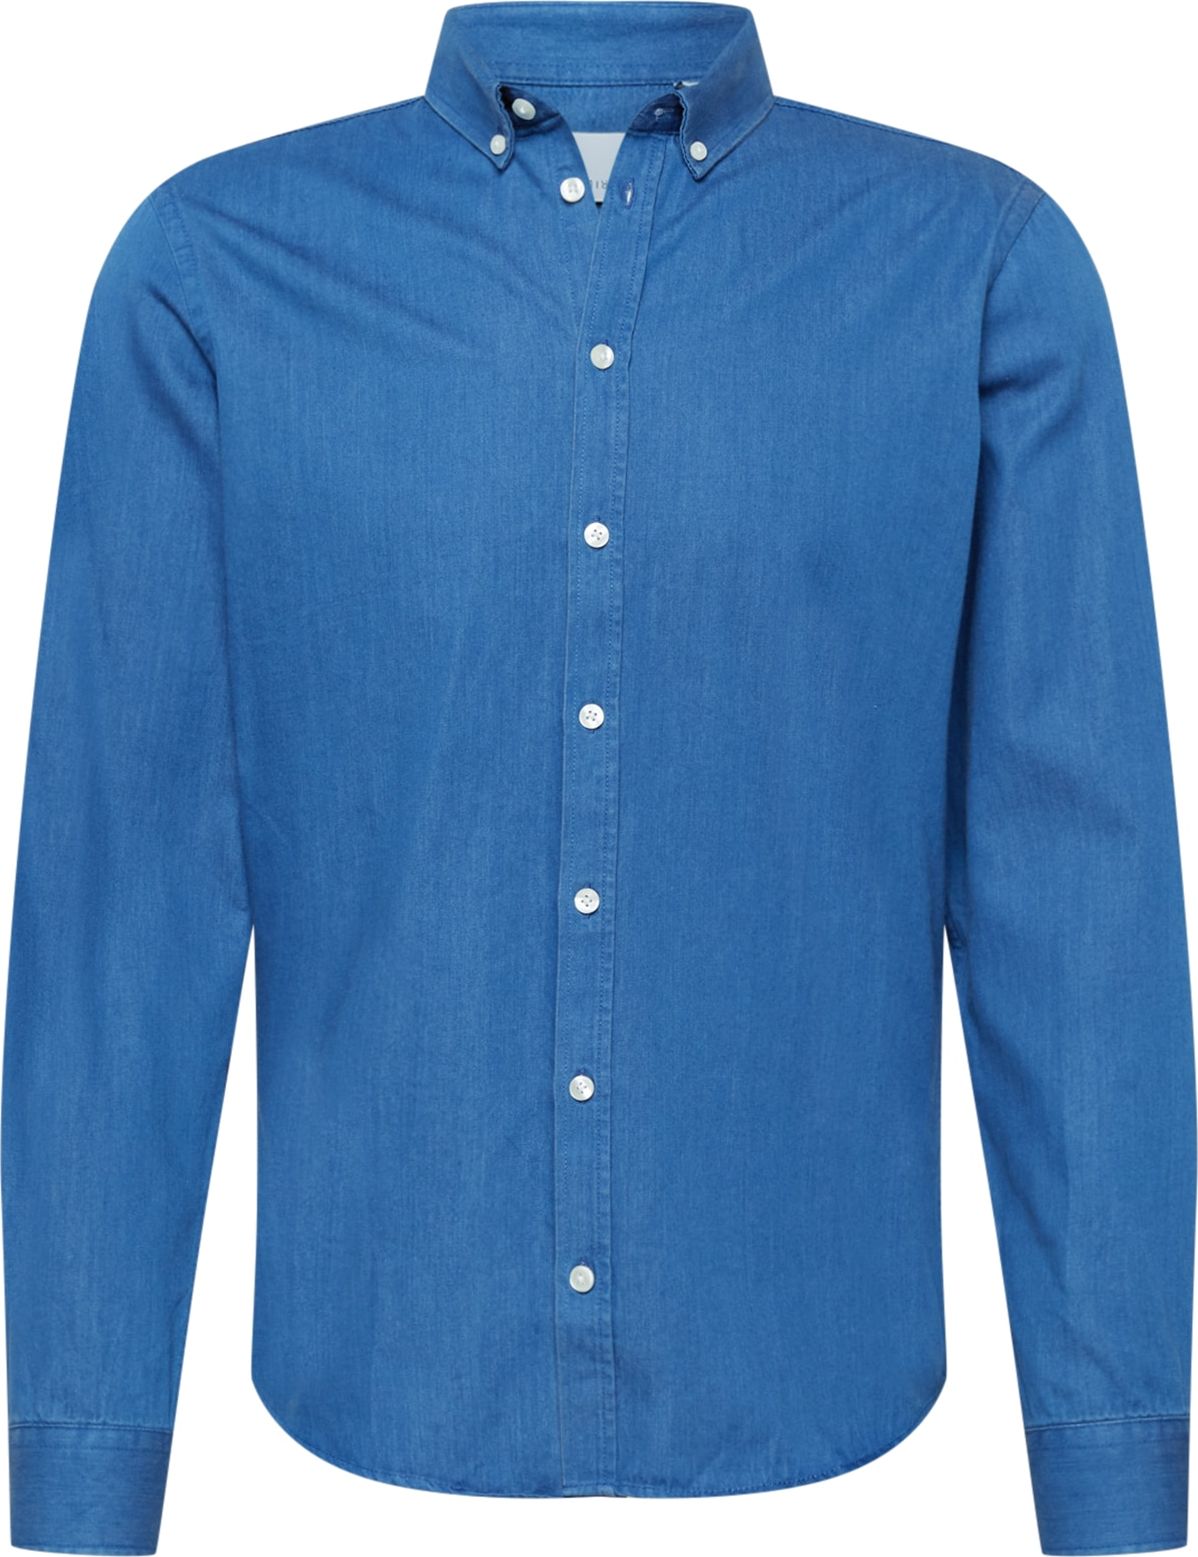 Košile 'Anton' casual friday modrá džínovina